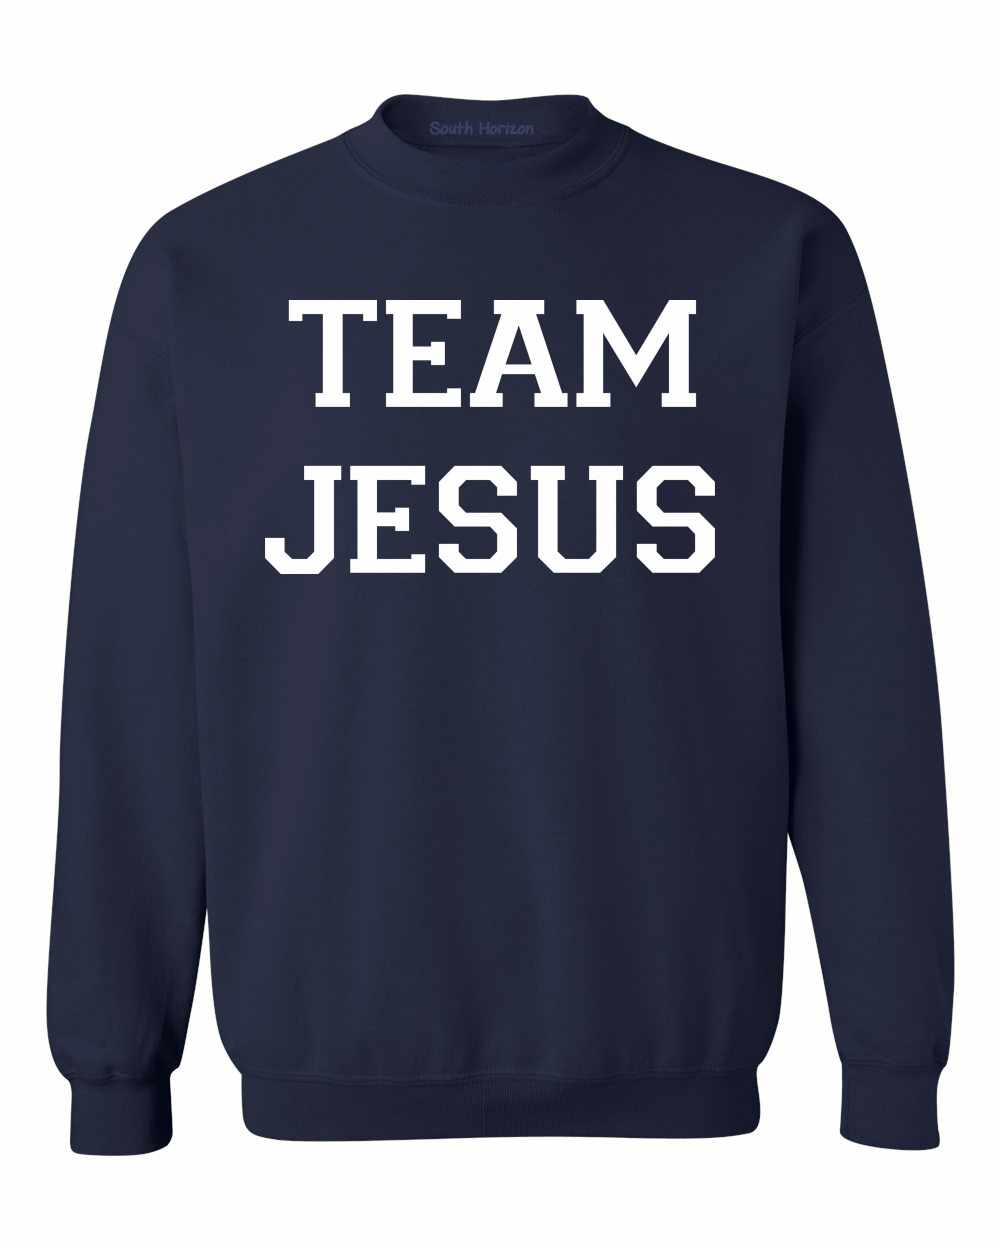 TEAM JESUS on SweatShirt (#589-11)